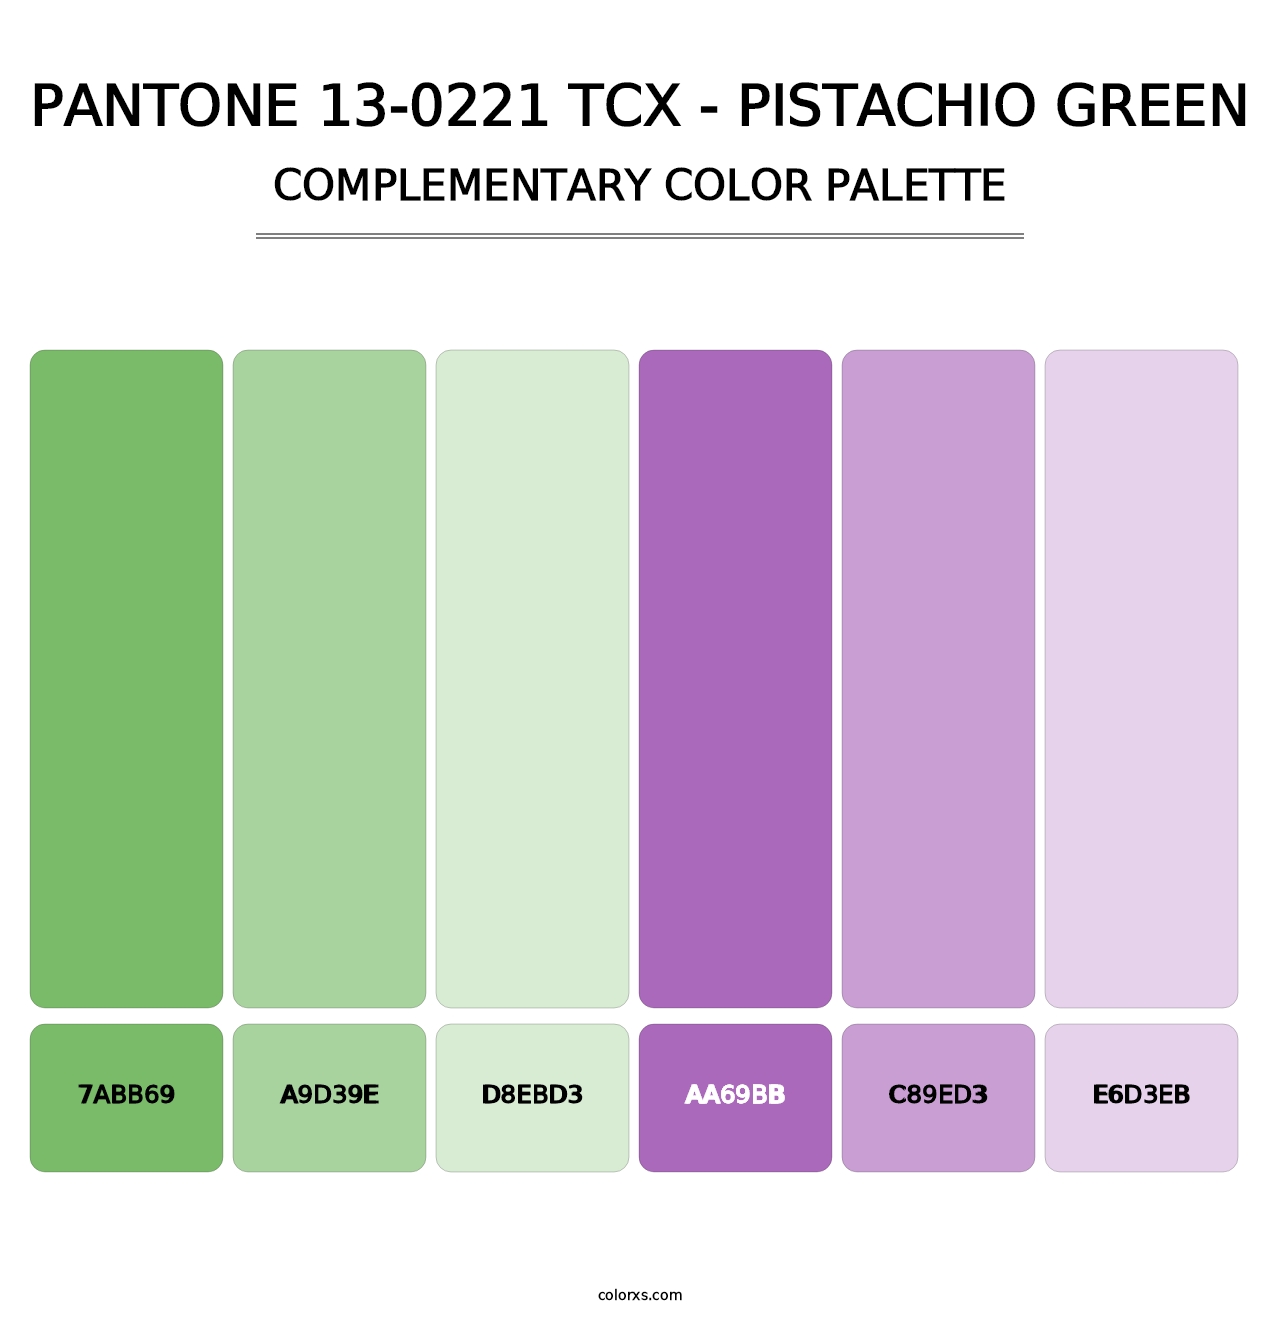 PANTONE 13-0221 TCX - Pistachio Green - Complementary Color Palette